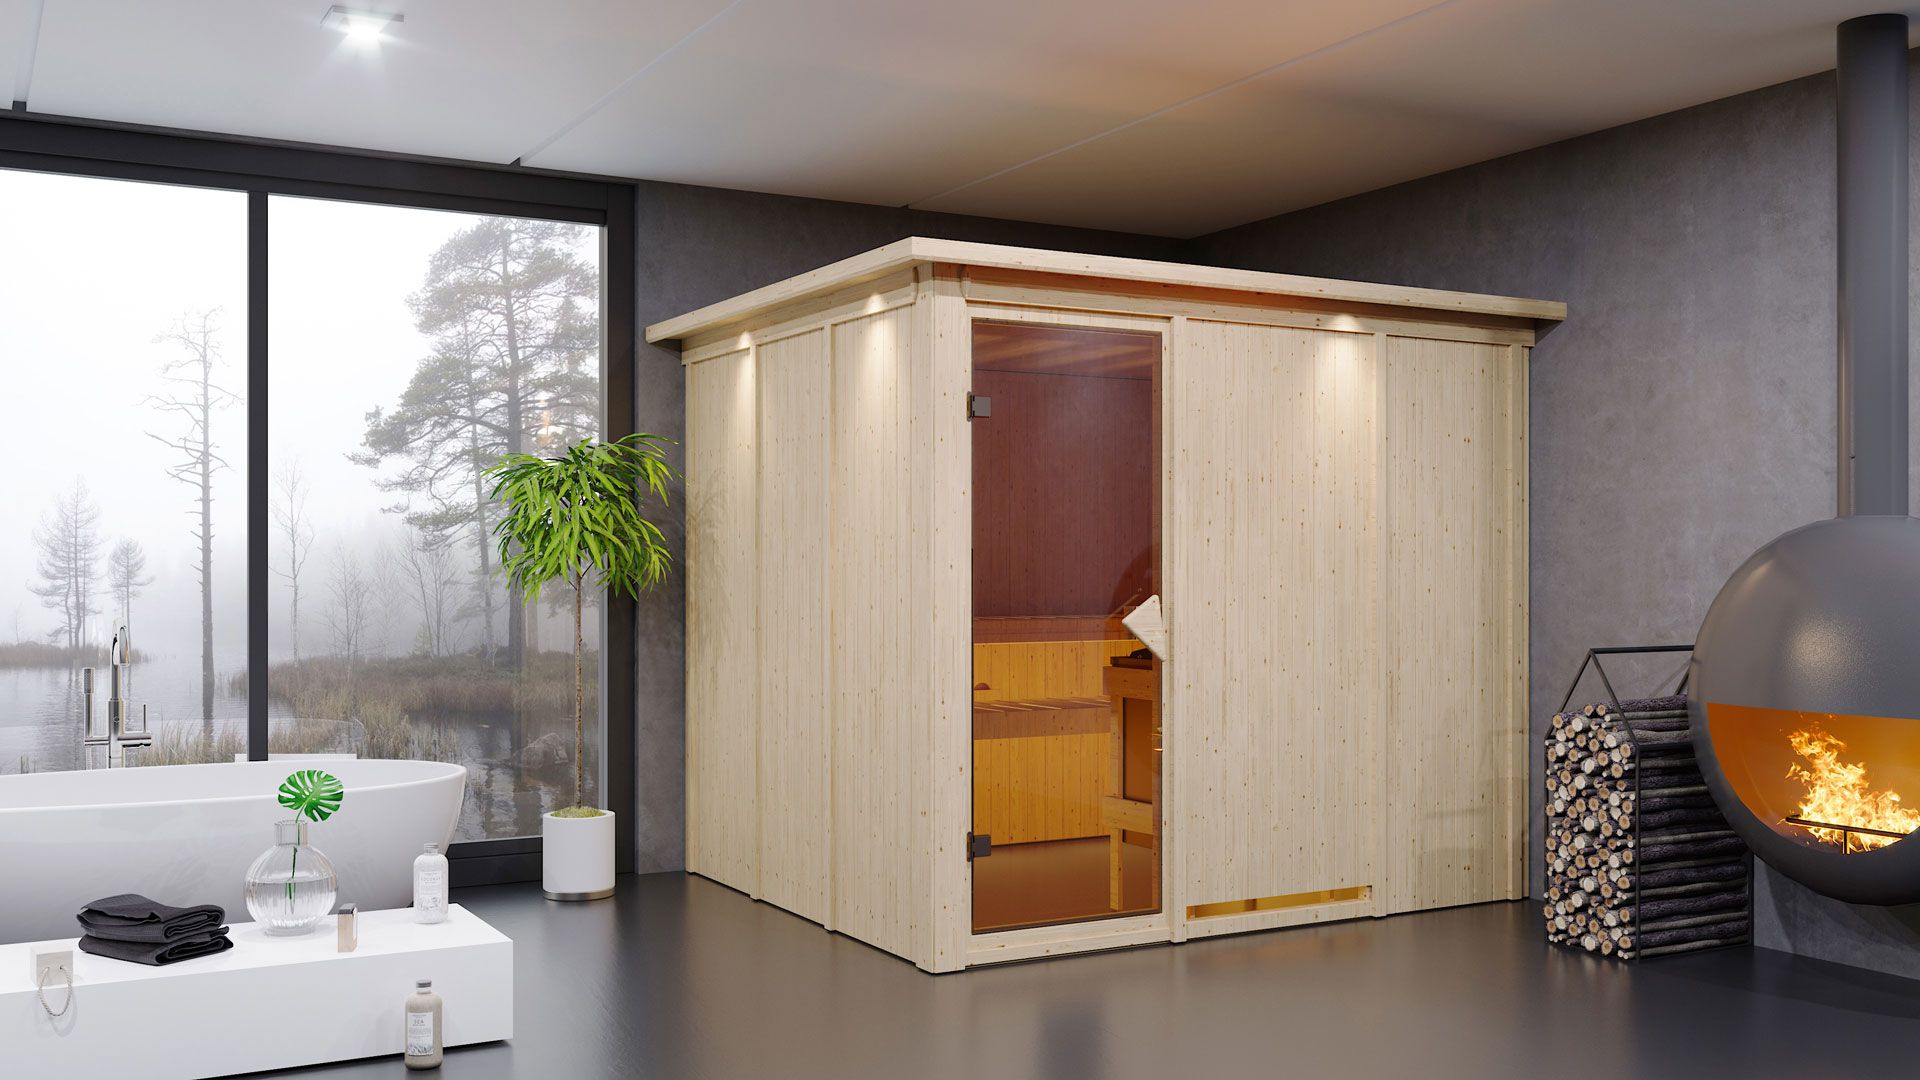 Sauna "Toivo" SET mit Kranz und Ofen externe Steuerung easy 9 kW Edelstahl - 245 x 210 x 202 cm (B x T x H)